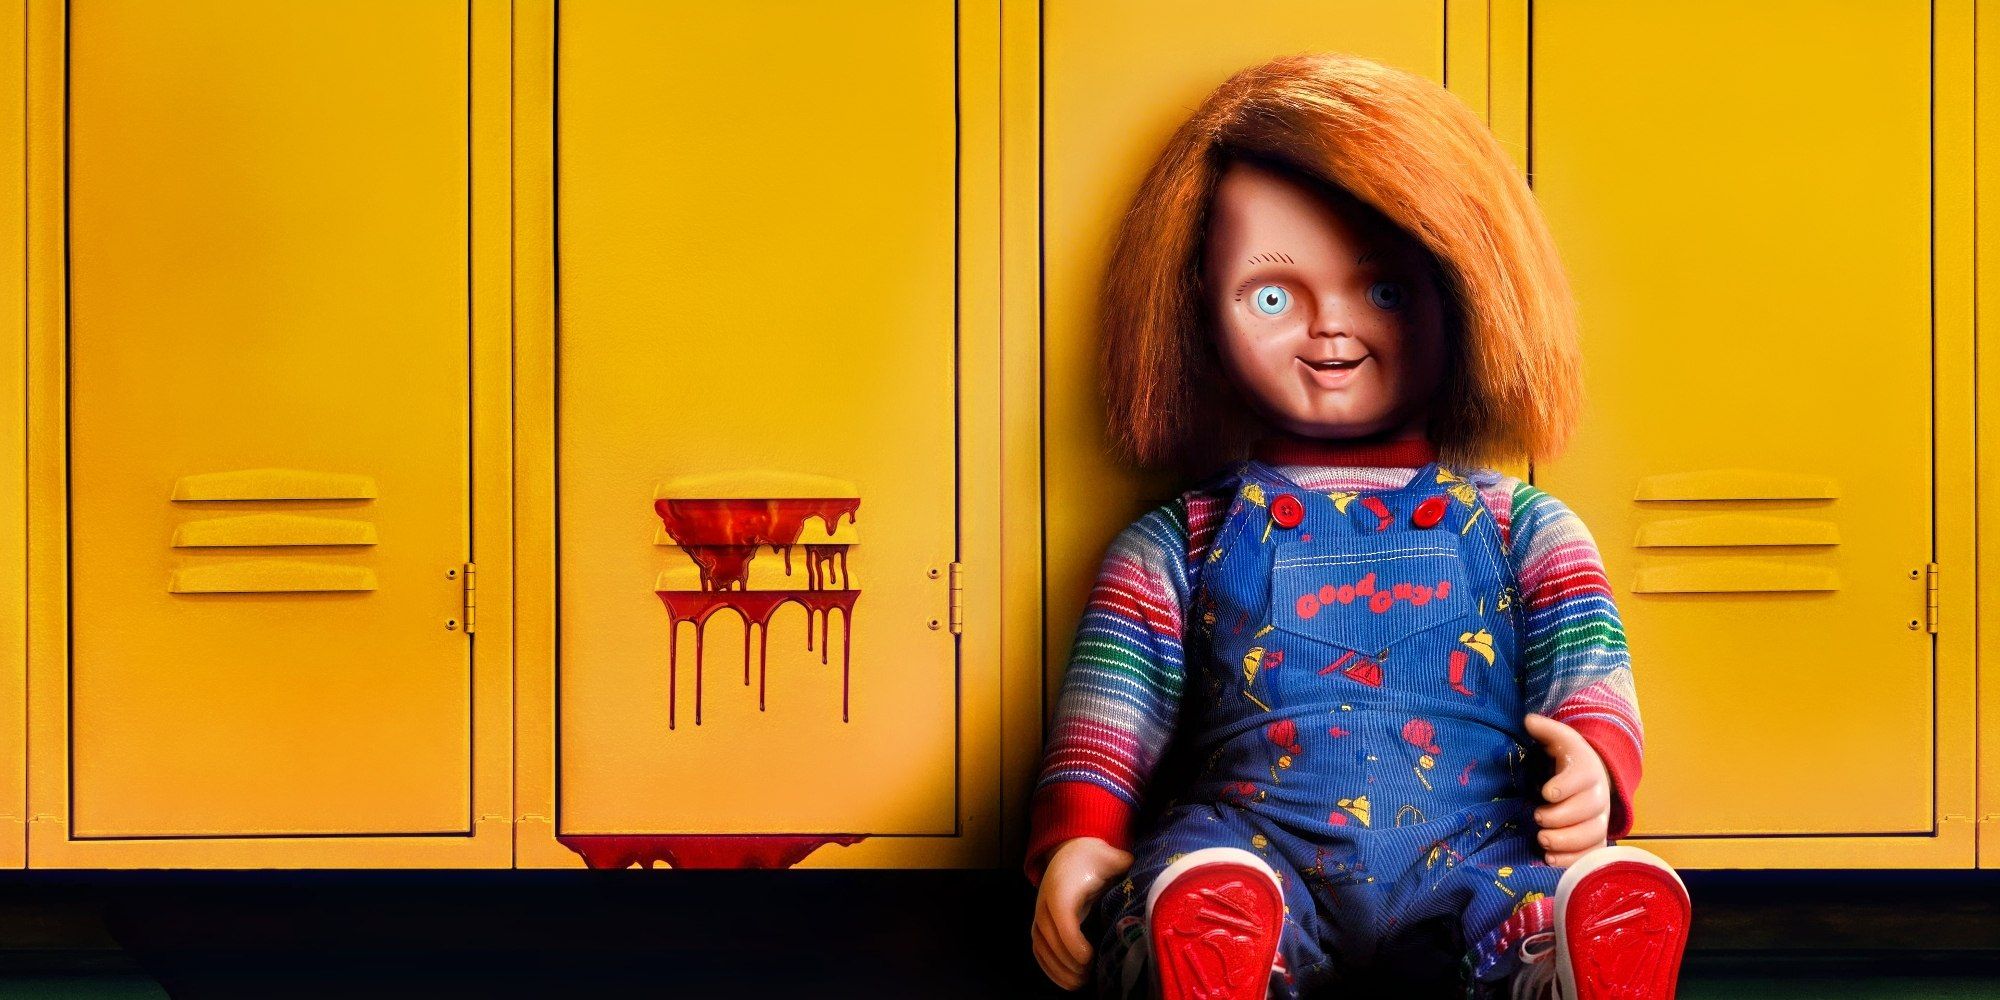 Serie Tv Chucky, terza stagione della bambola assassina